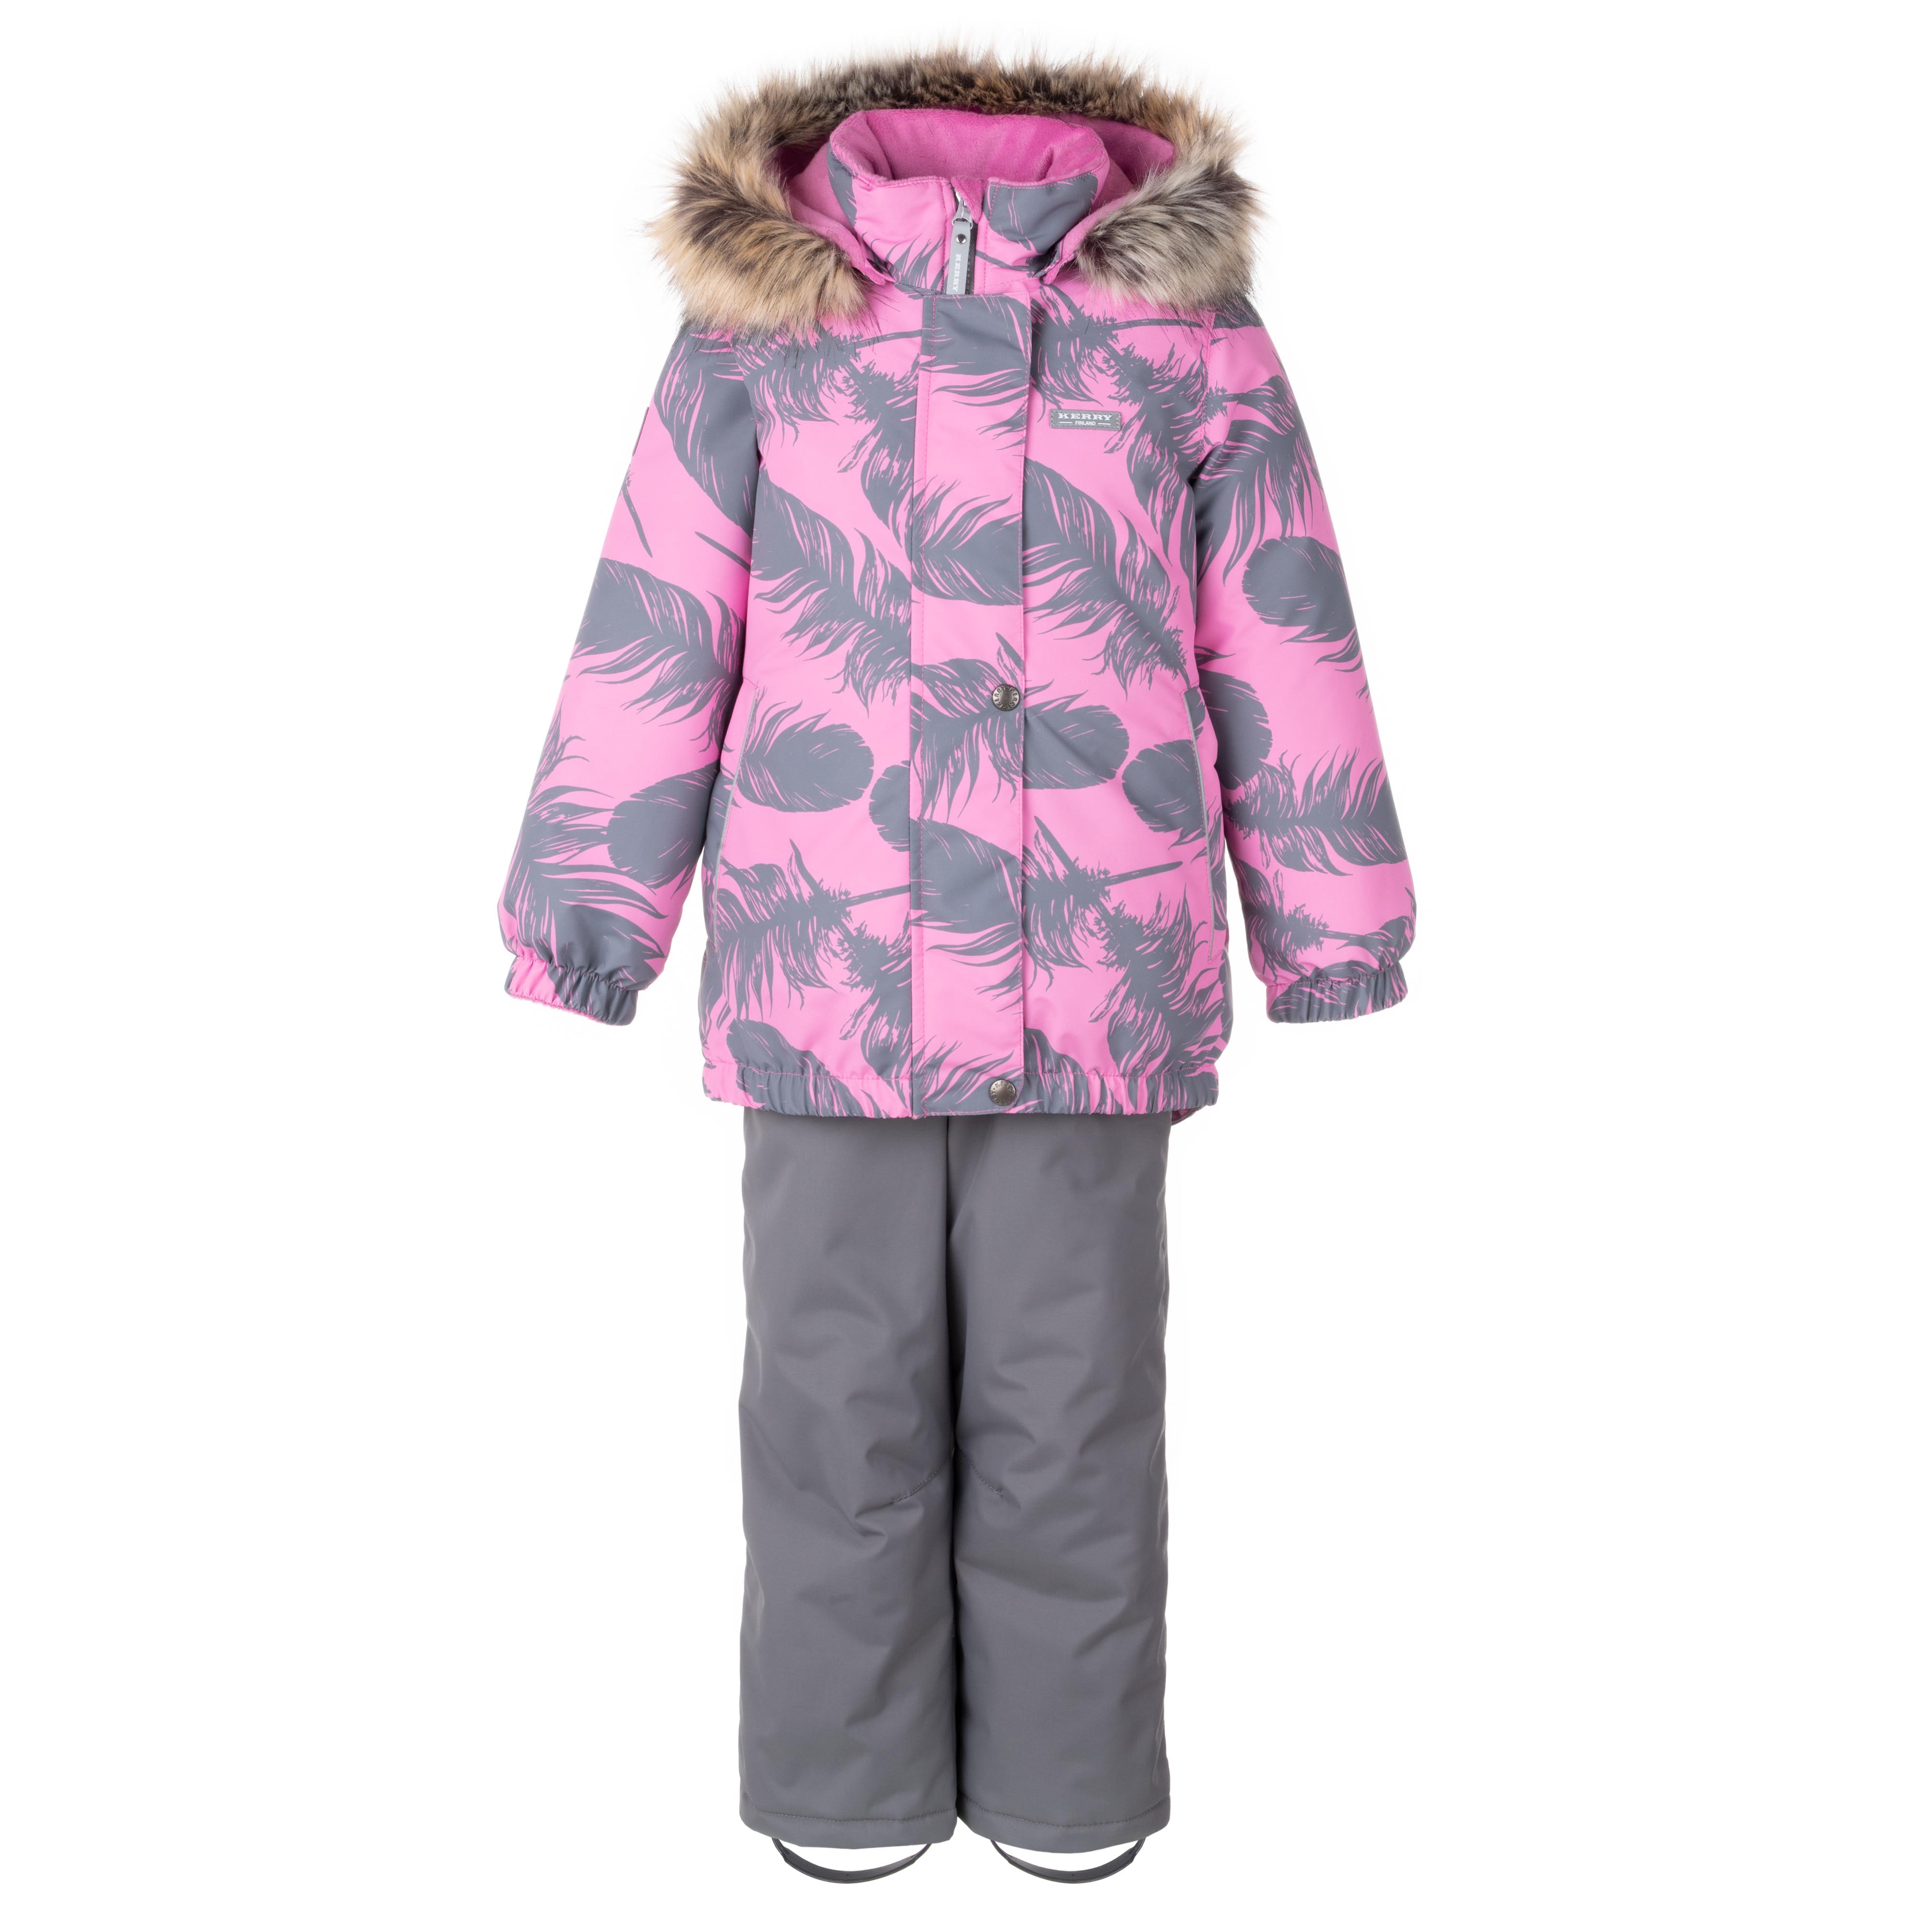 Комплект верхней одежды KERRY K23420 A, серый, розовый, 110 комплект верхней одежды oldos aoaw23su2t116 розовый  140